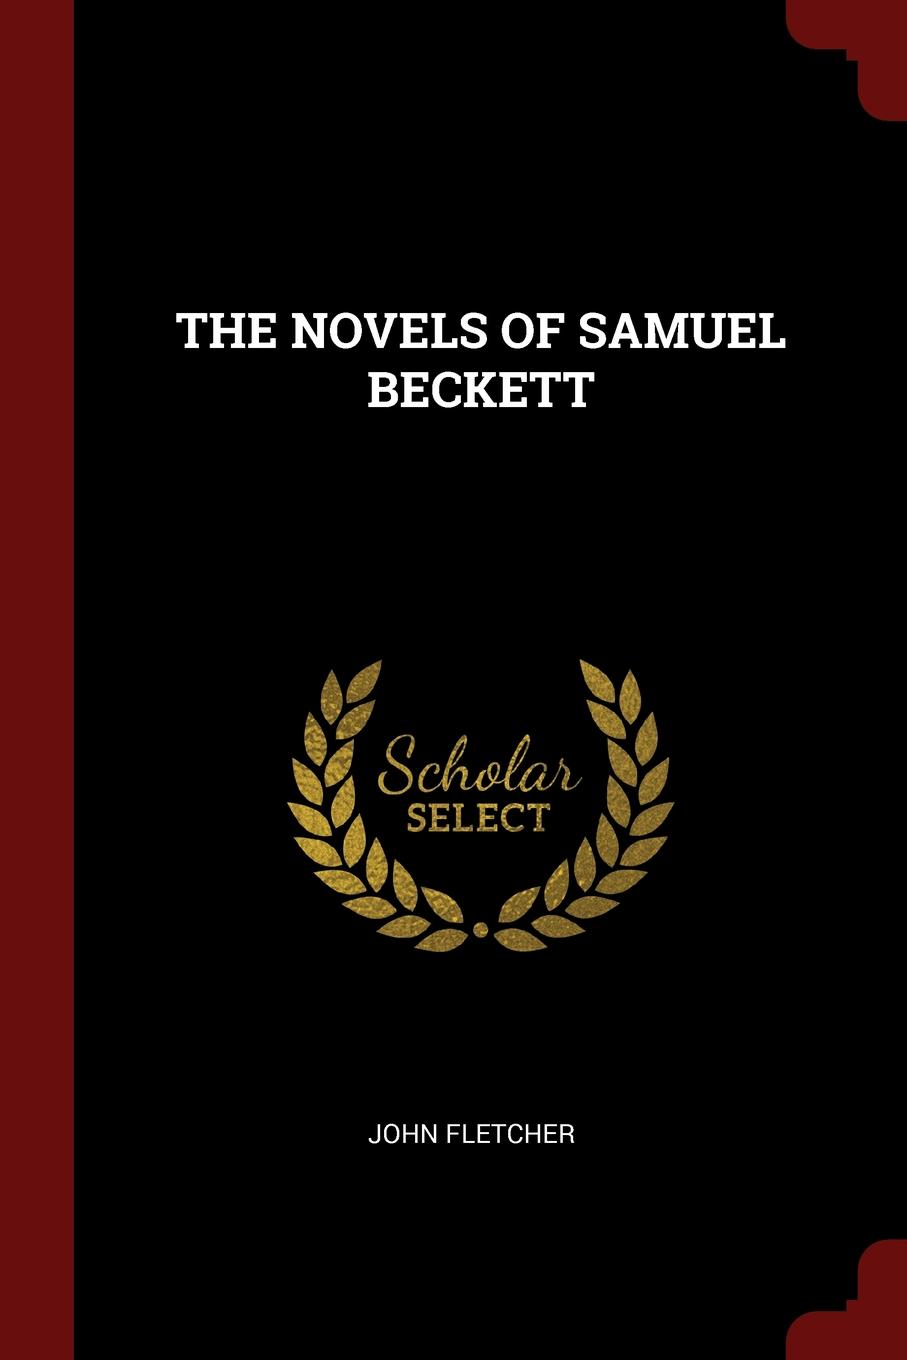 THE NOVELS OF SAMUEL BECKETT